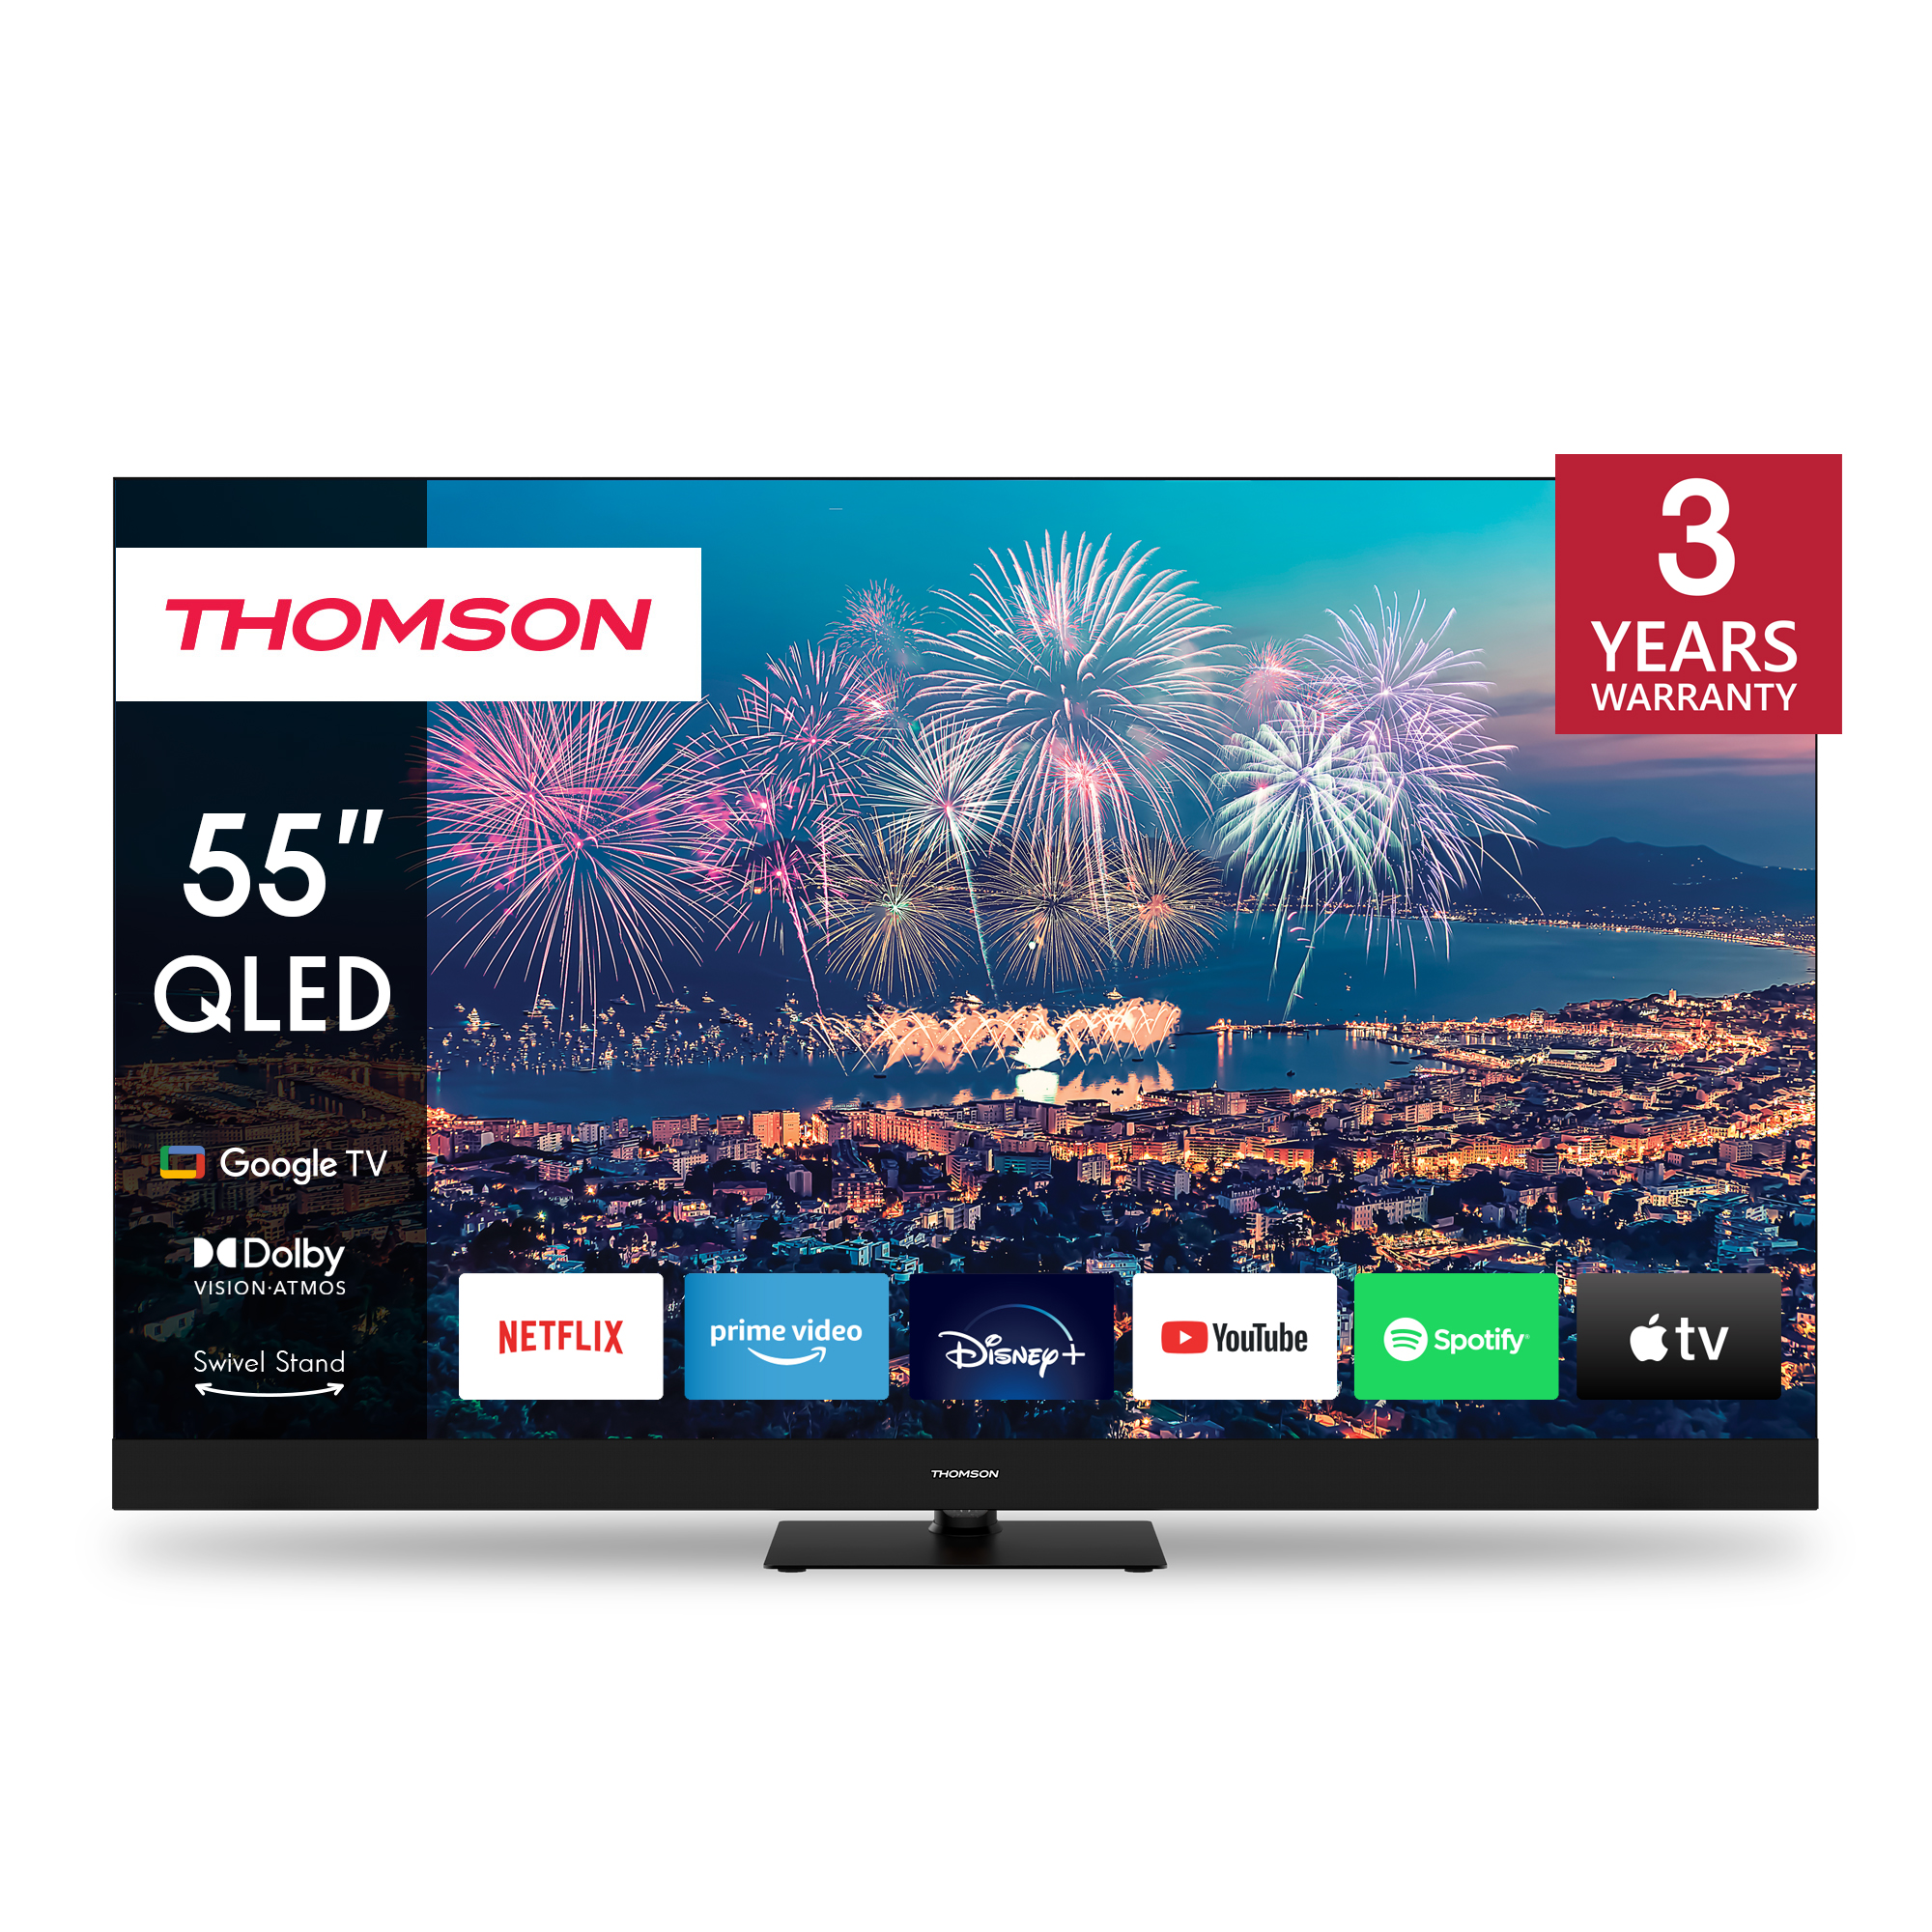 Thomson 55QG6C14 QLED Plus Google TV